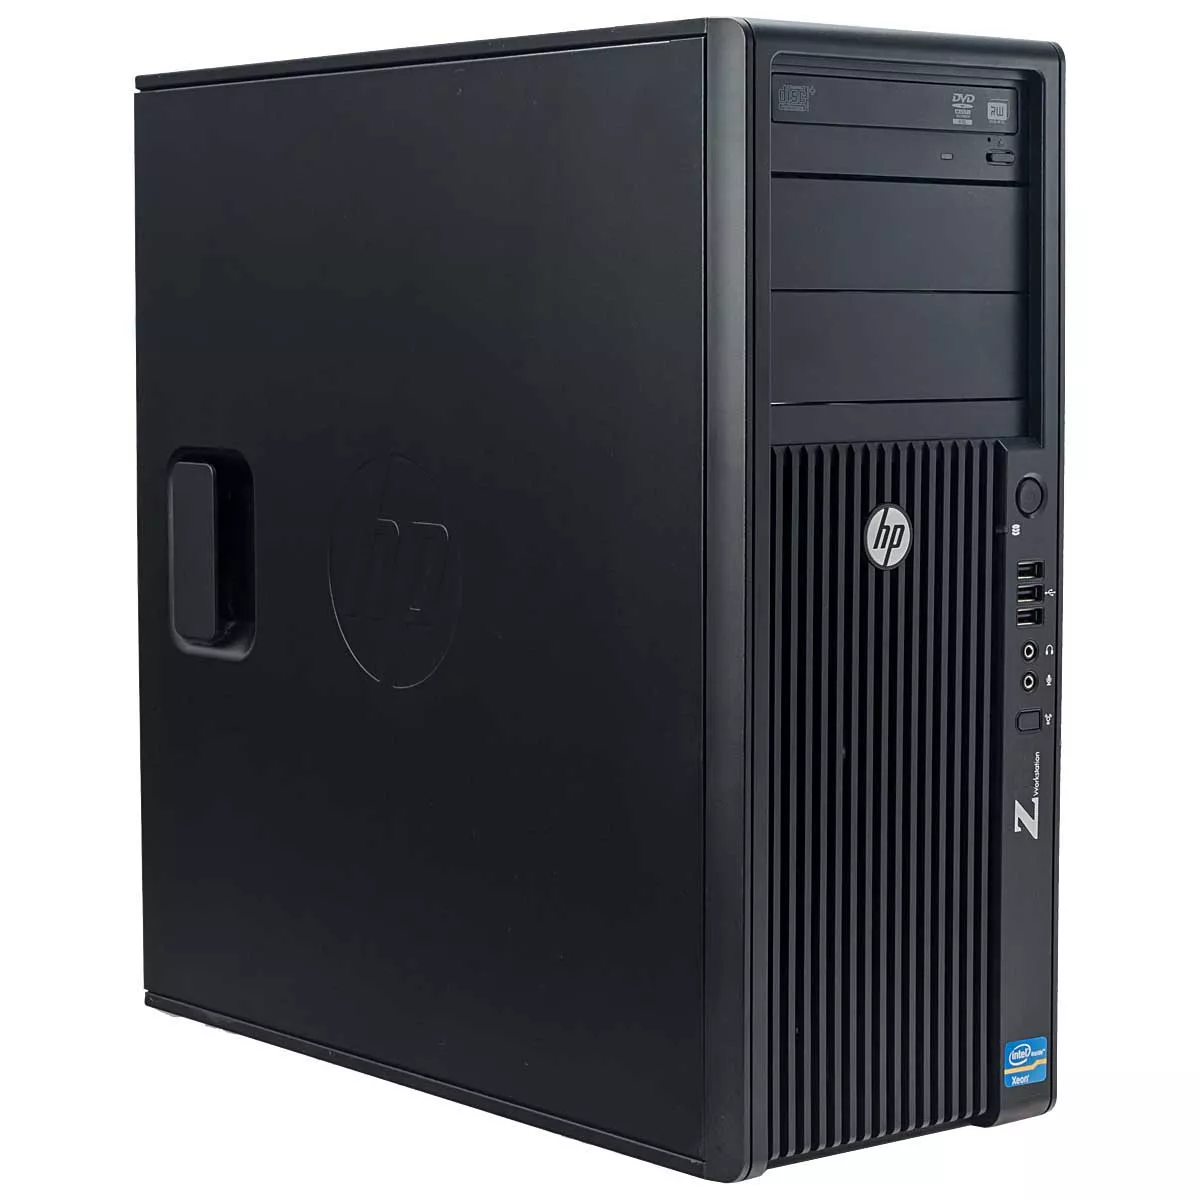 HP Z220 Core i7 3770 nVidia Quadro 2000 